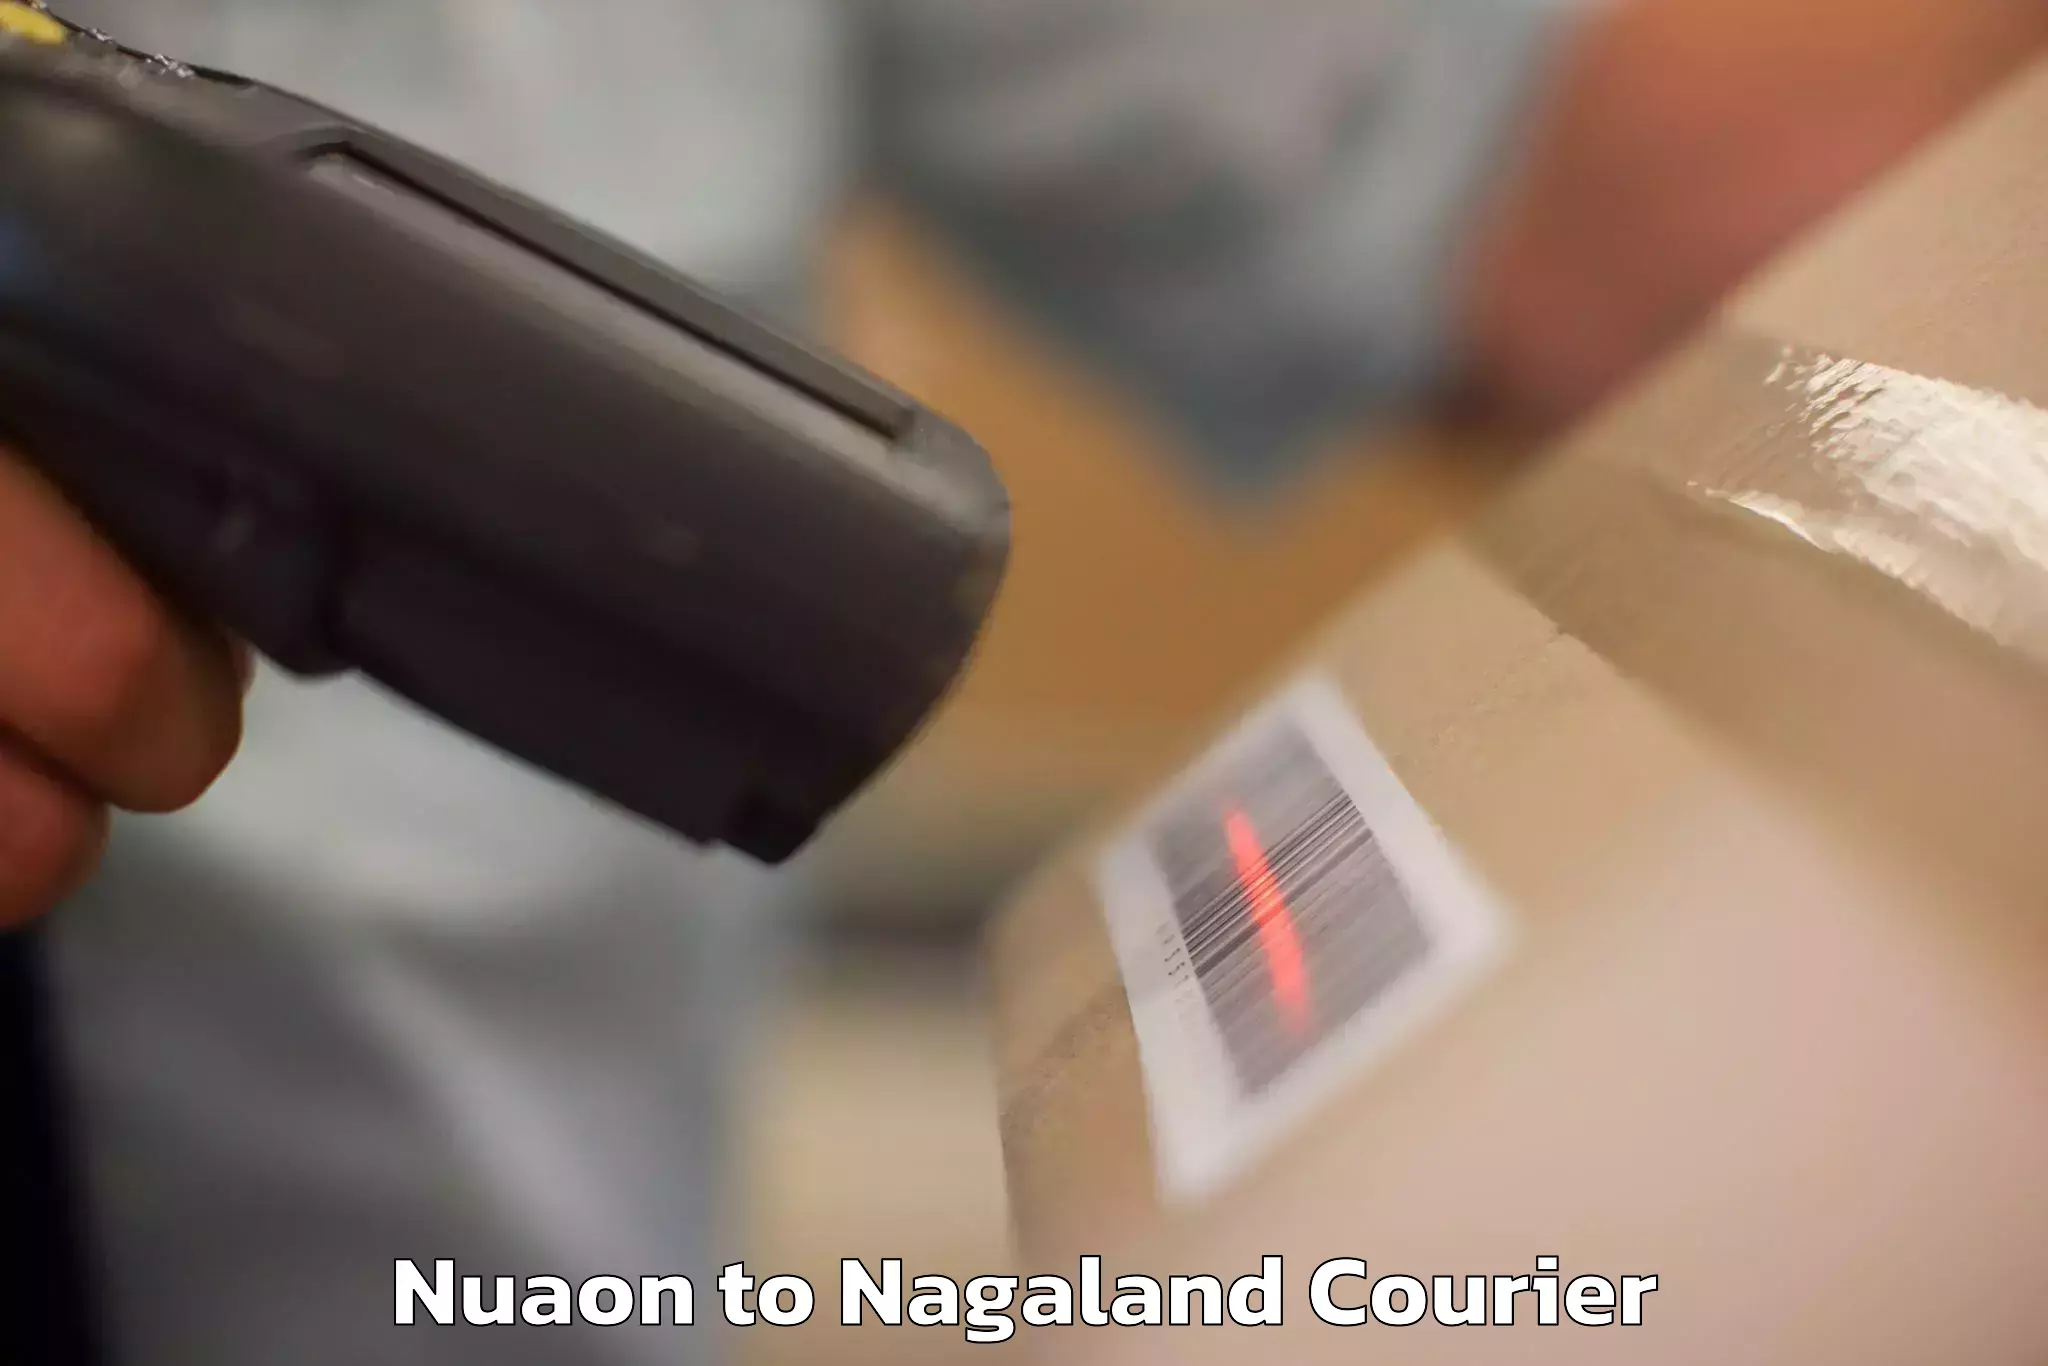 Luggage transit service Nuaon to Nagaland